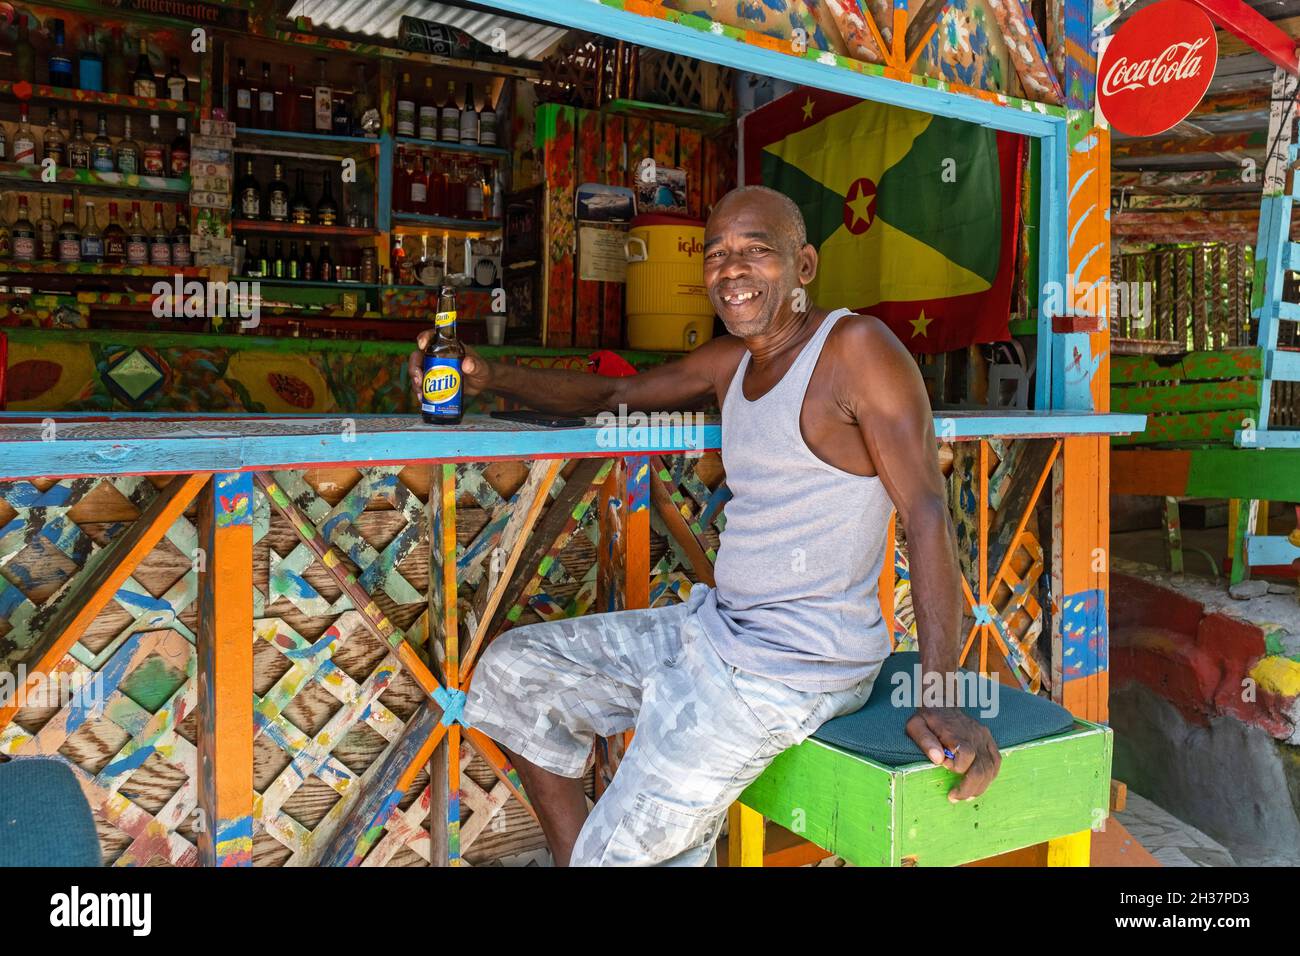 Un homme noir local boit de la bière Carib au Charlie's Bar sur Happy Hill, à Saint George, sur la côte ouest de l'île de Grenade, dans les Caraïbes Banque D'Images